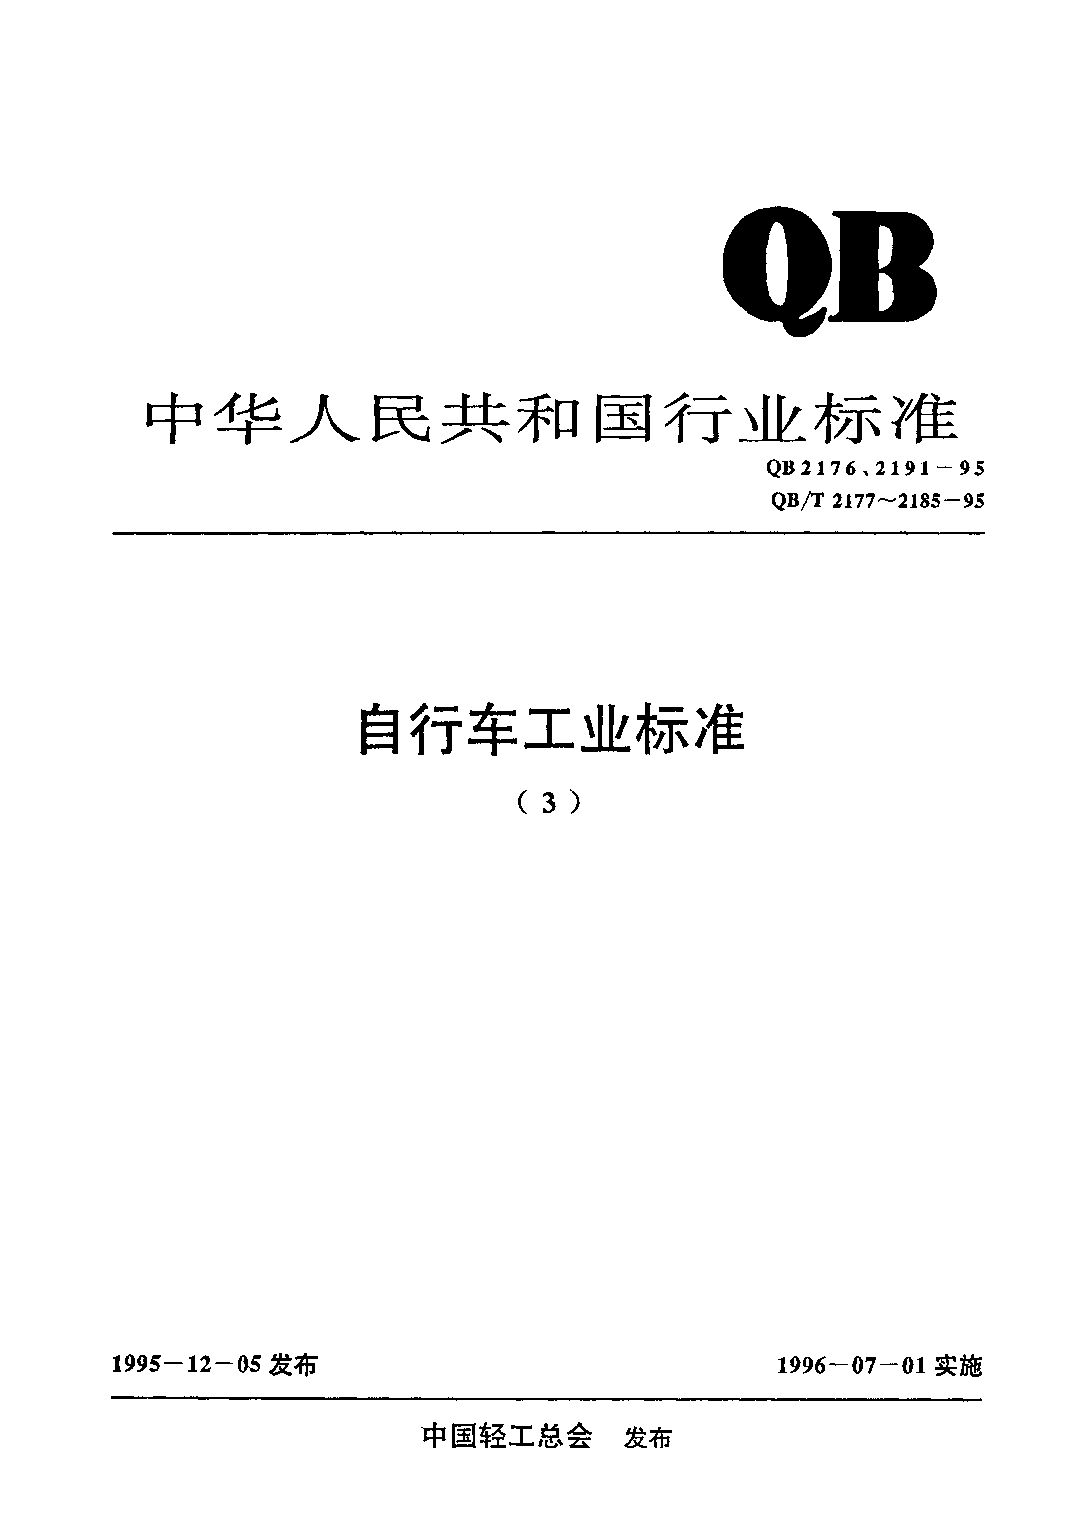 QB 2176-1995封面图